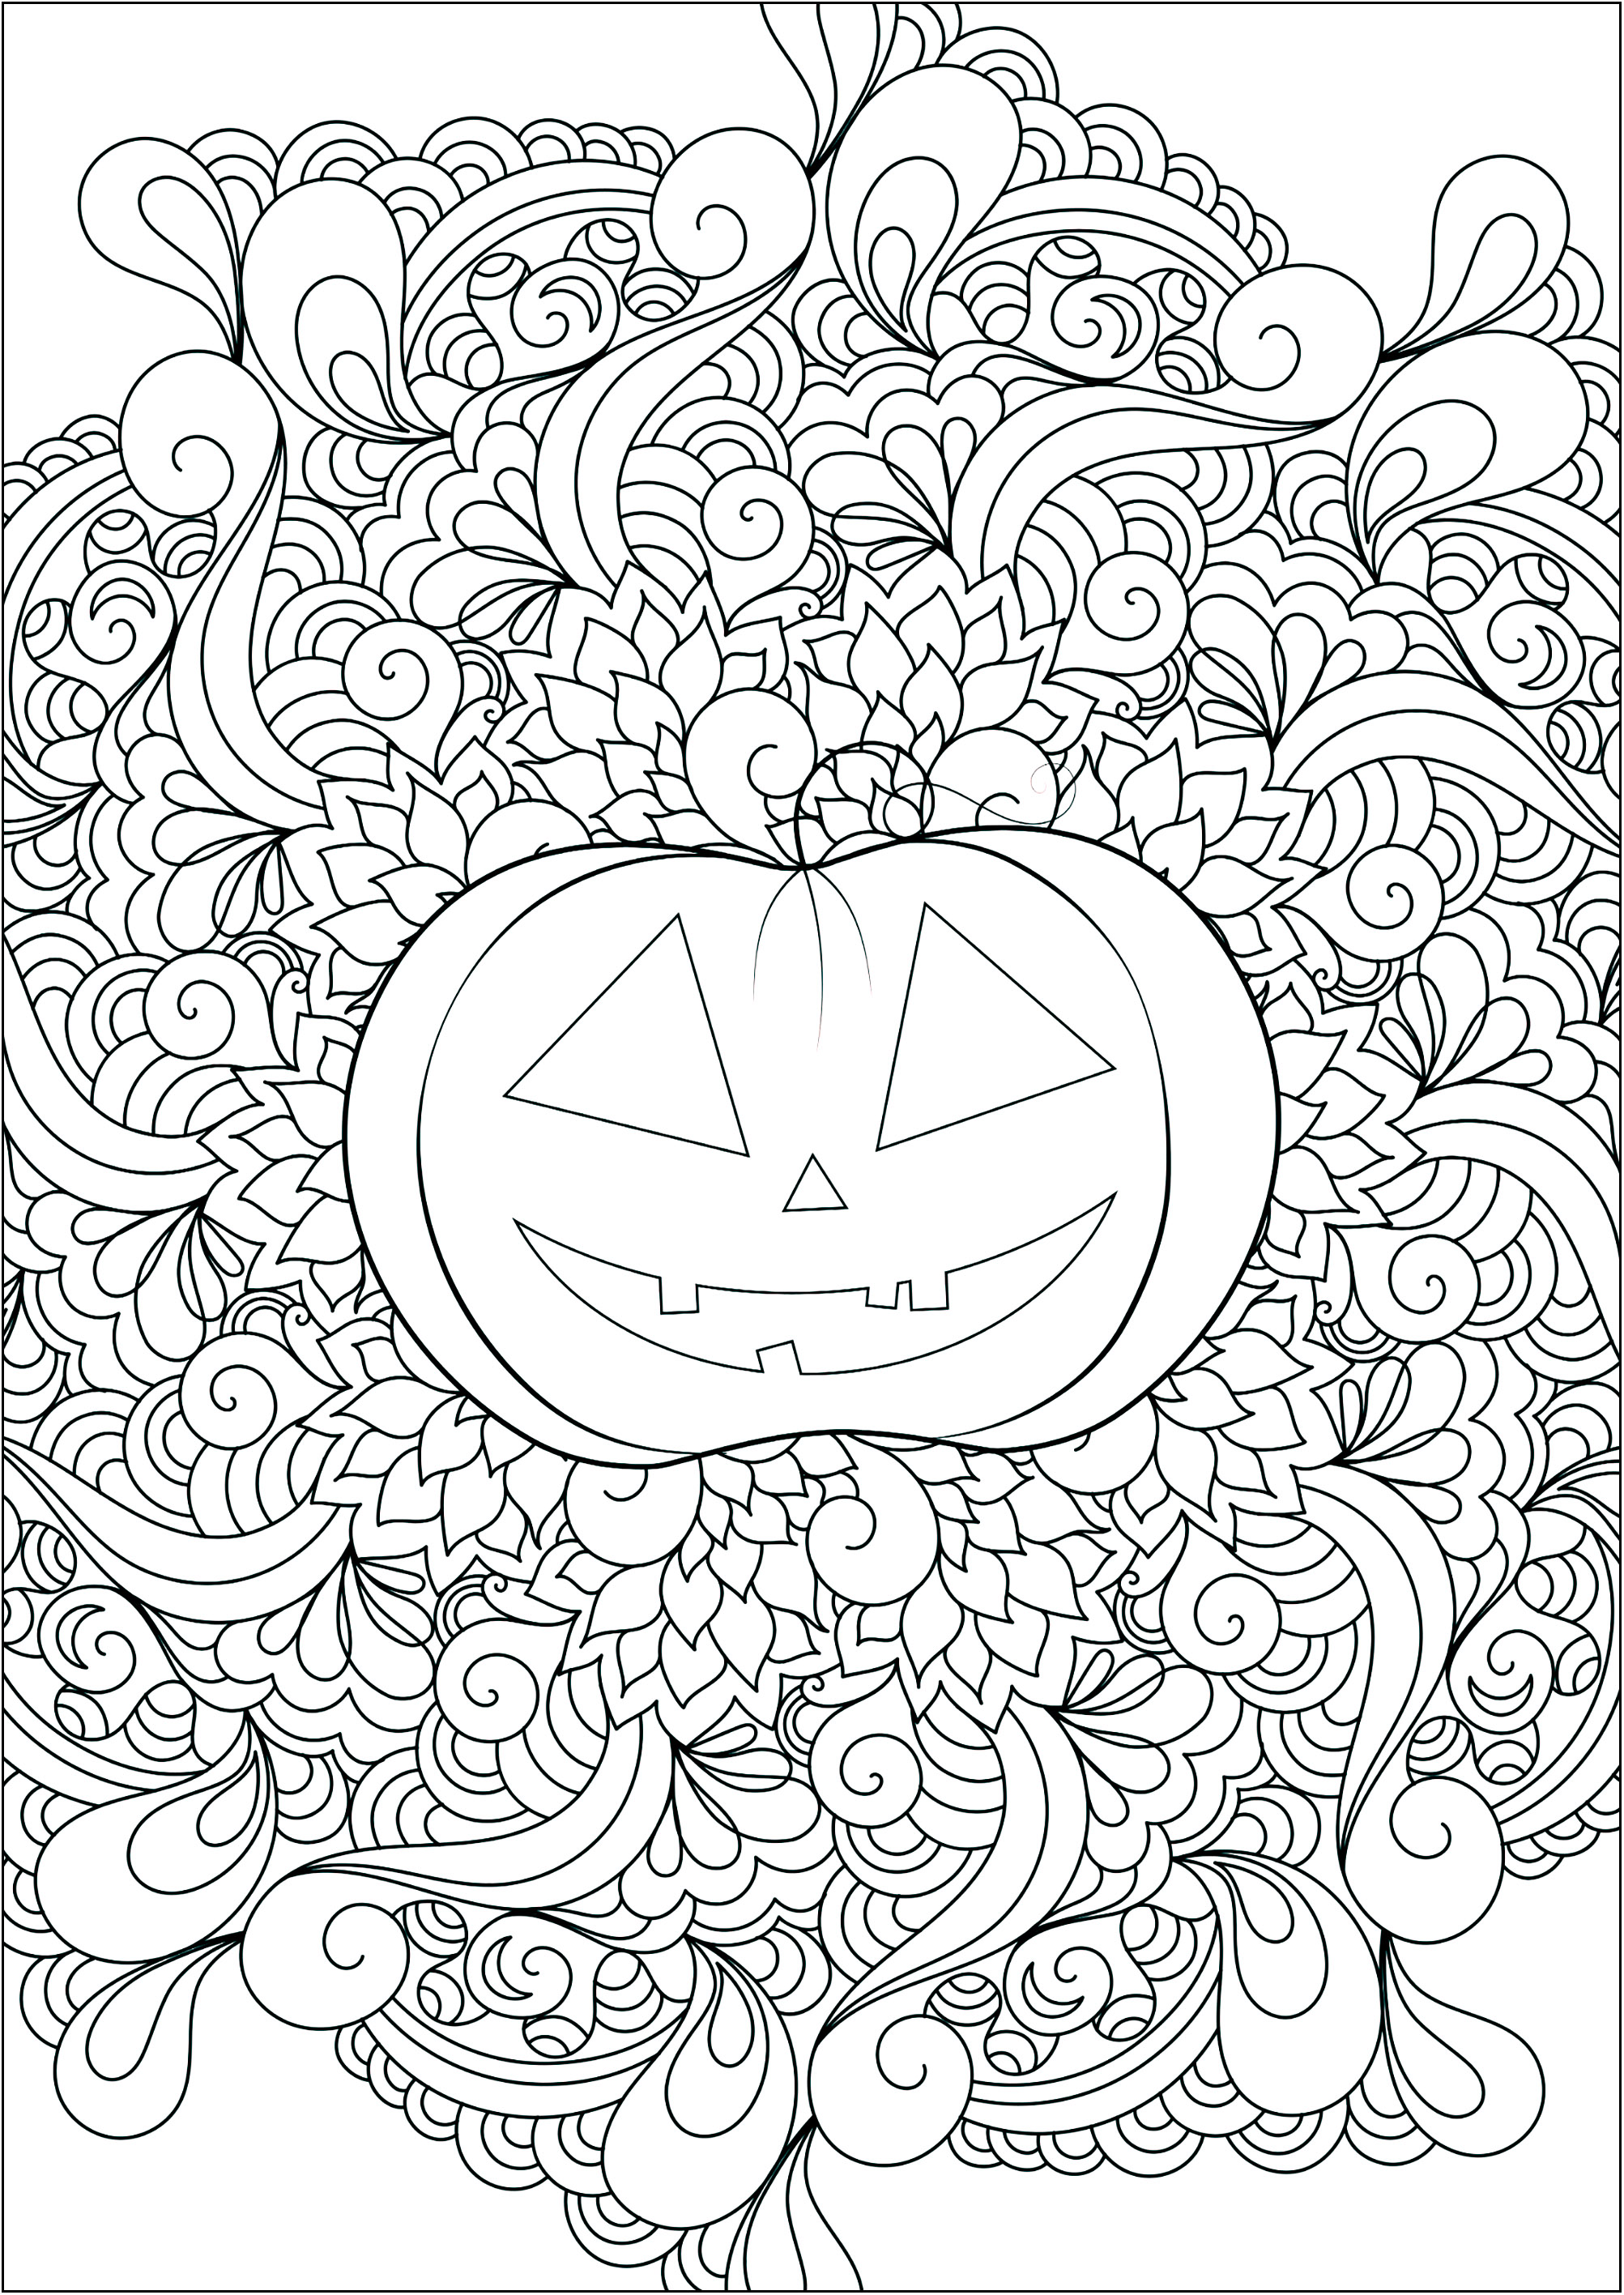 Bonita calabaza con motivos abstractos en el centro. Un libro para colorear perfecto para celebrar Halloween en color .., Origen : 123rf   Artista : Veronikaby